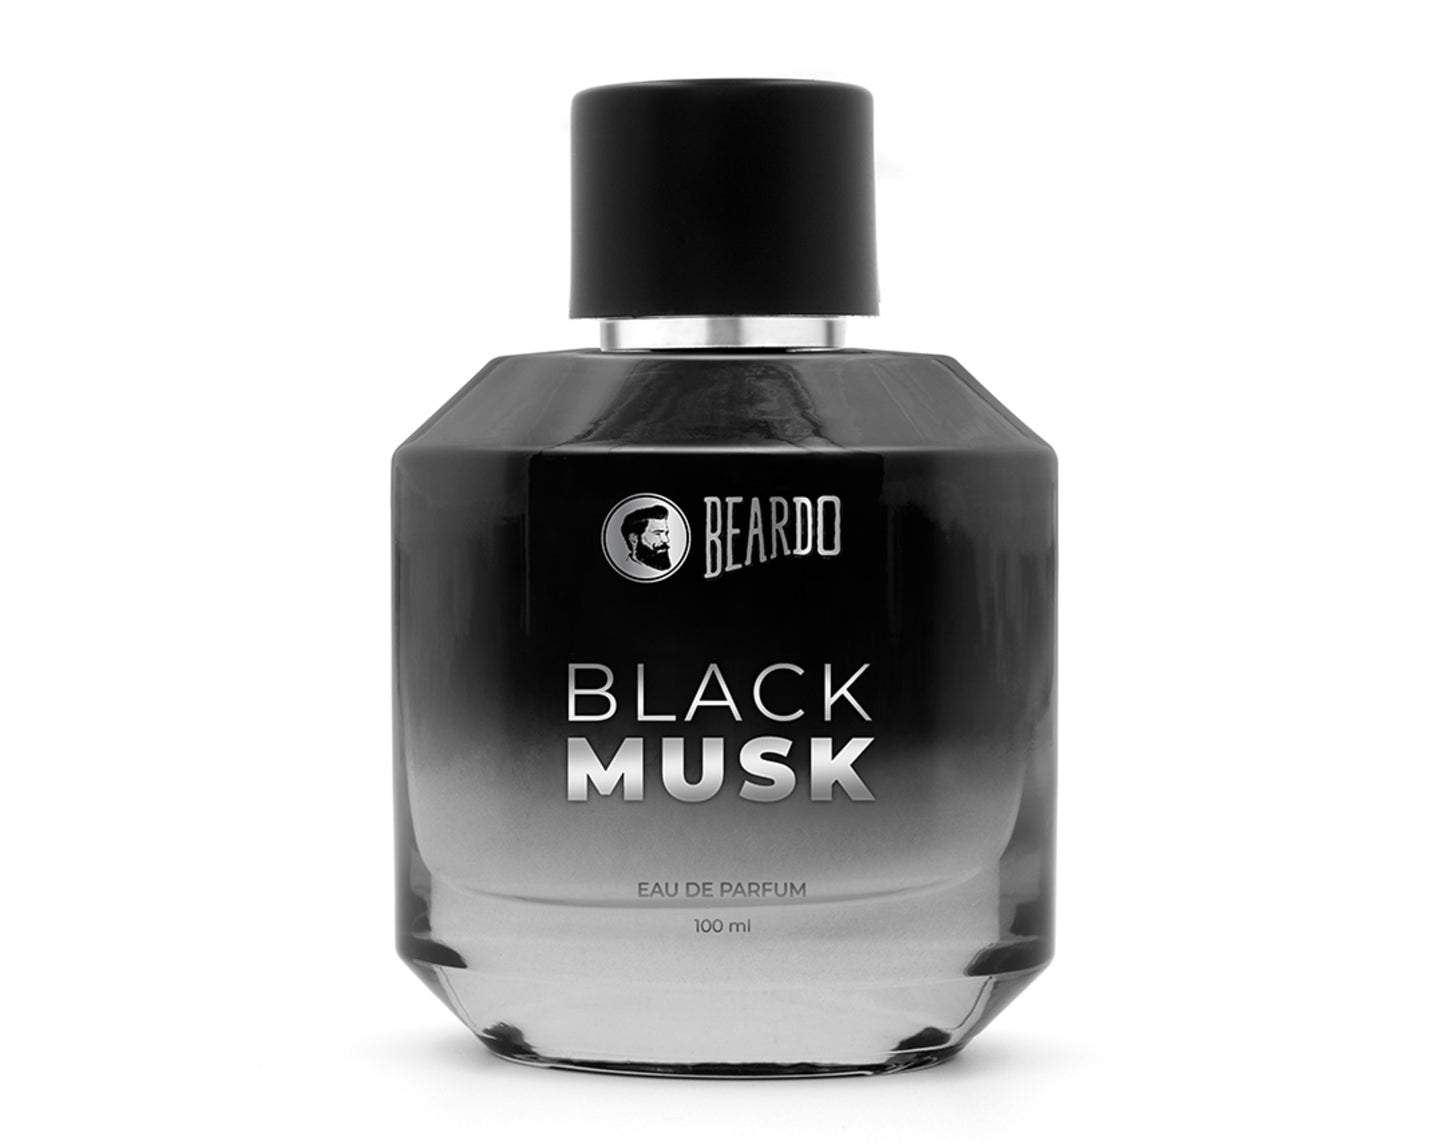 Beardo Ultimate Perfume Combo